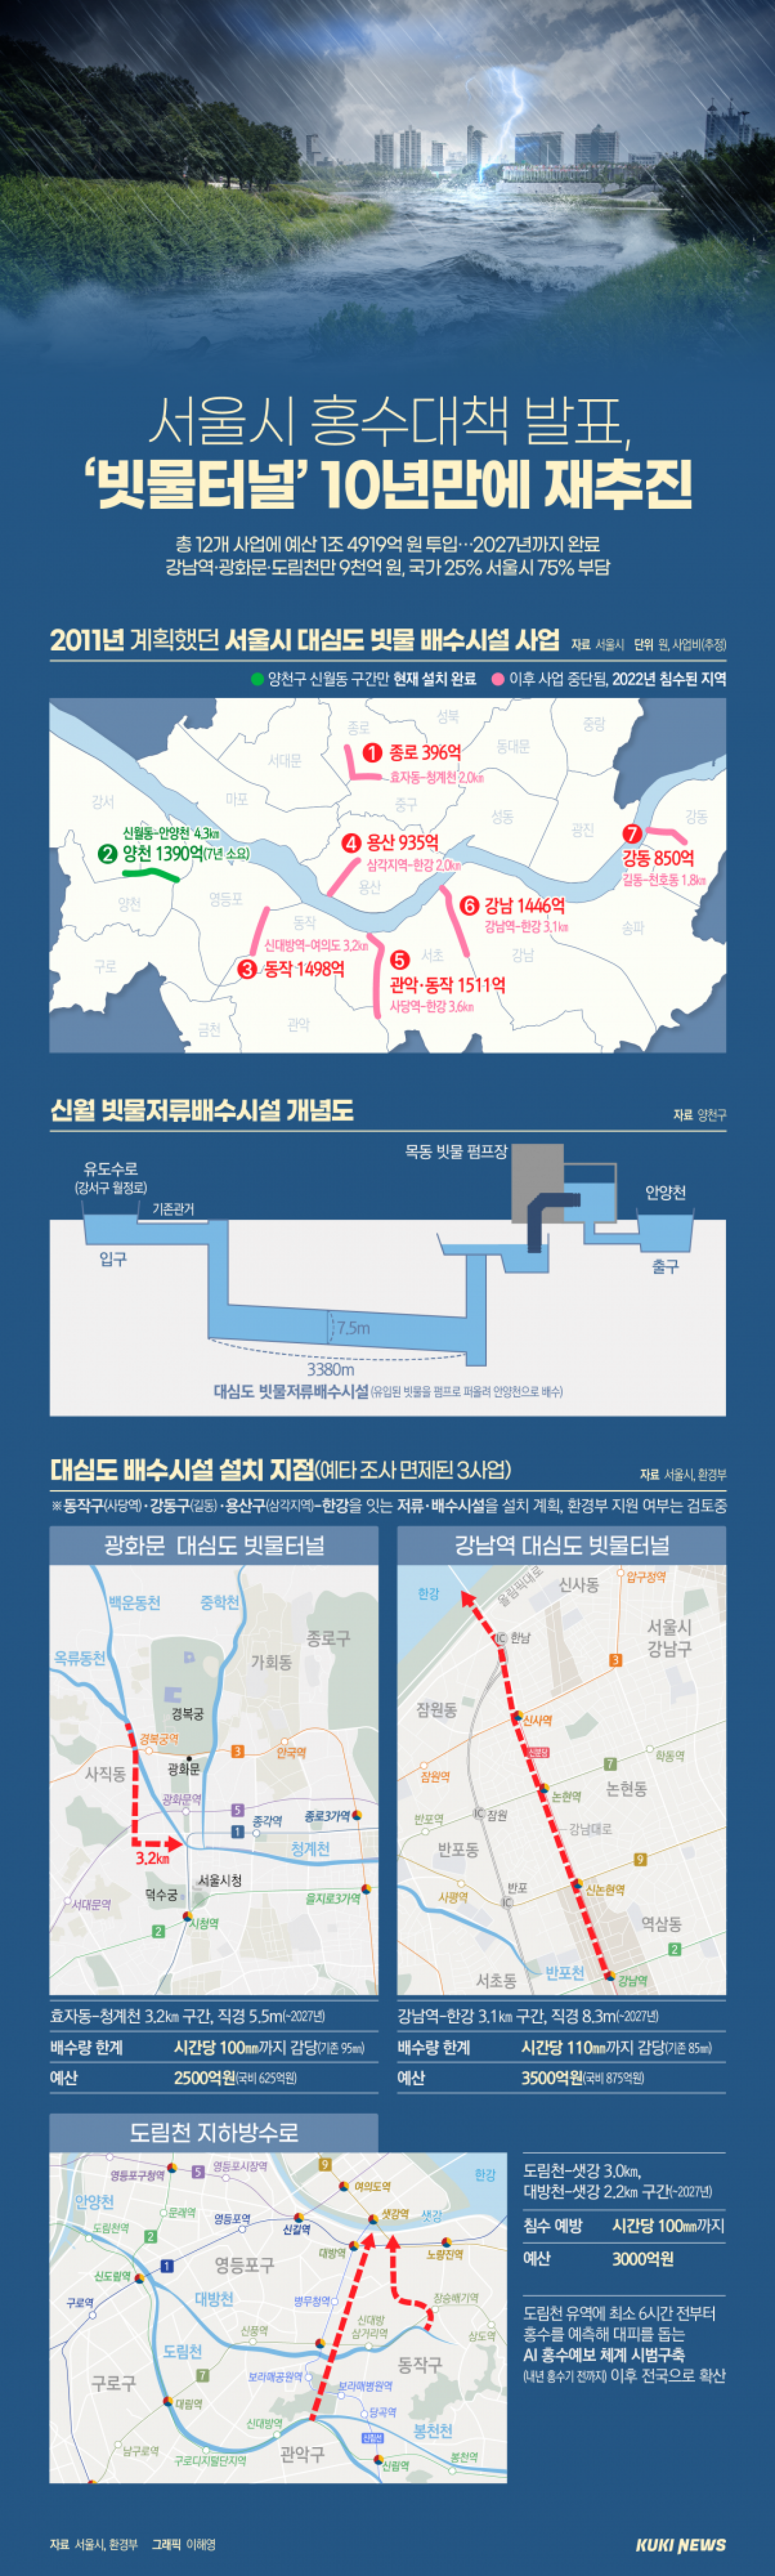 서울시 홍수 대책, 2027년까지 '빗물 터널' 10년 만에 재추진